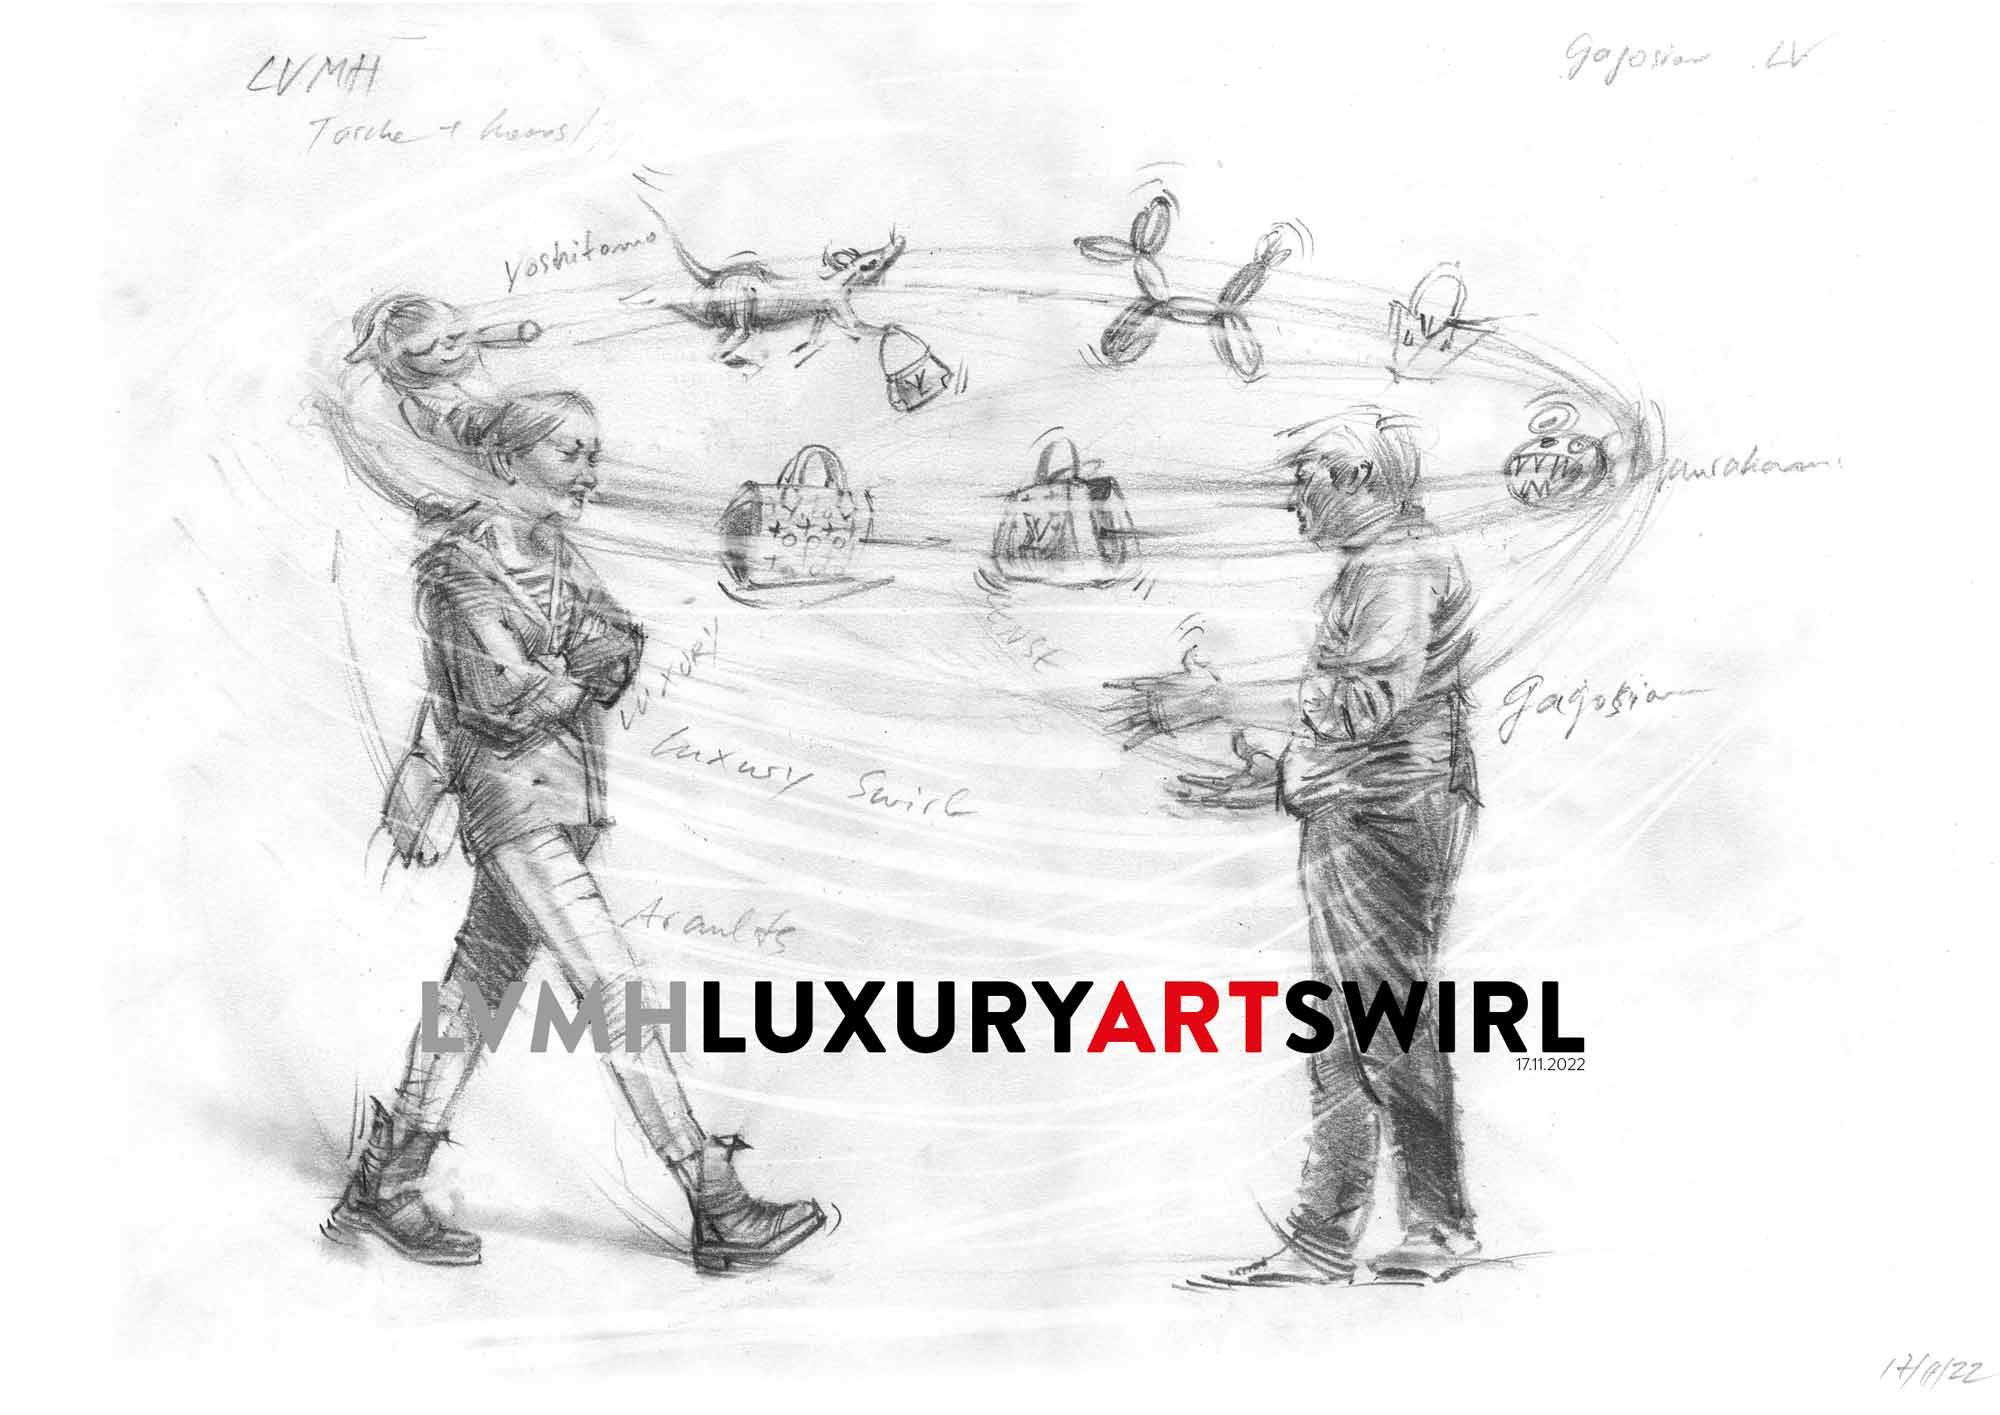 LVMH Luxury Art swirl